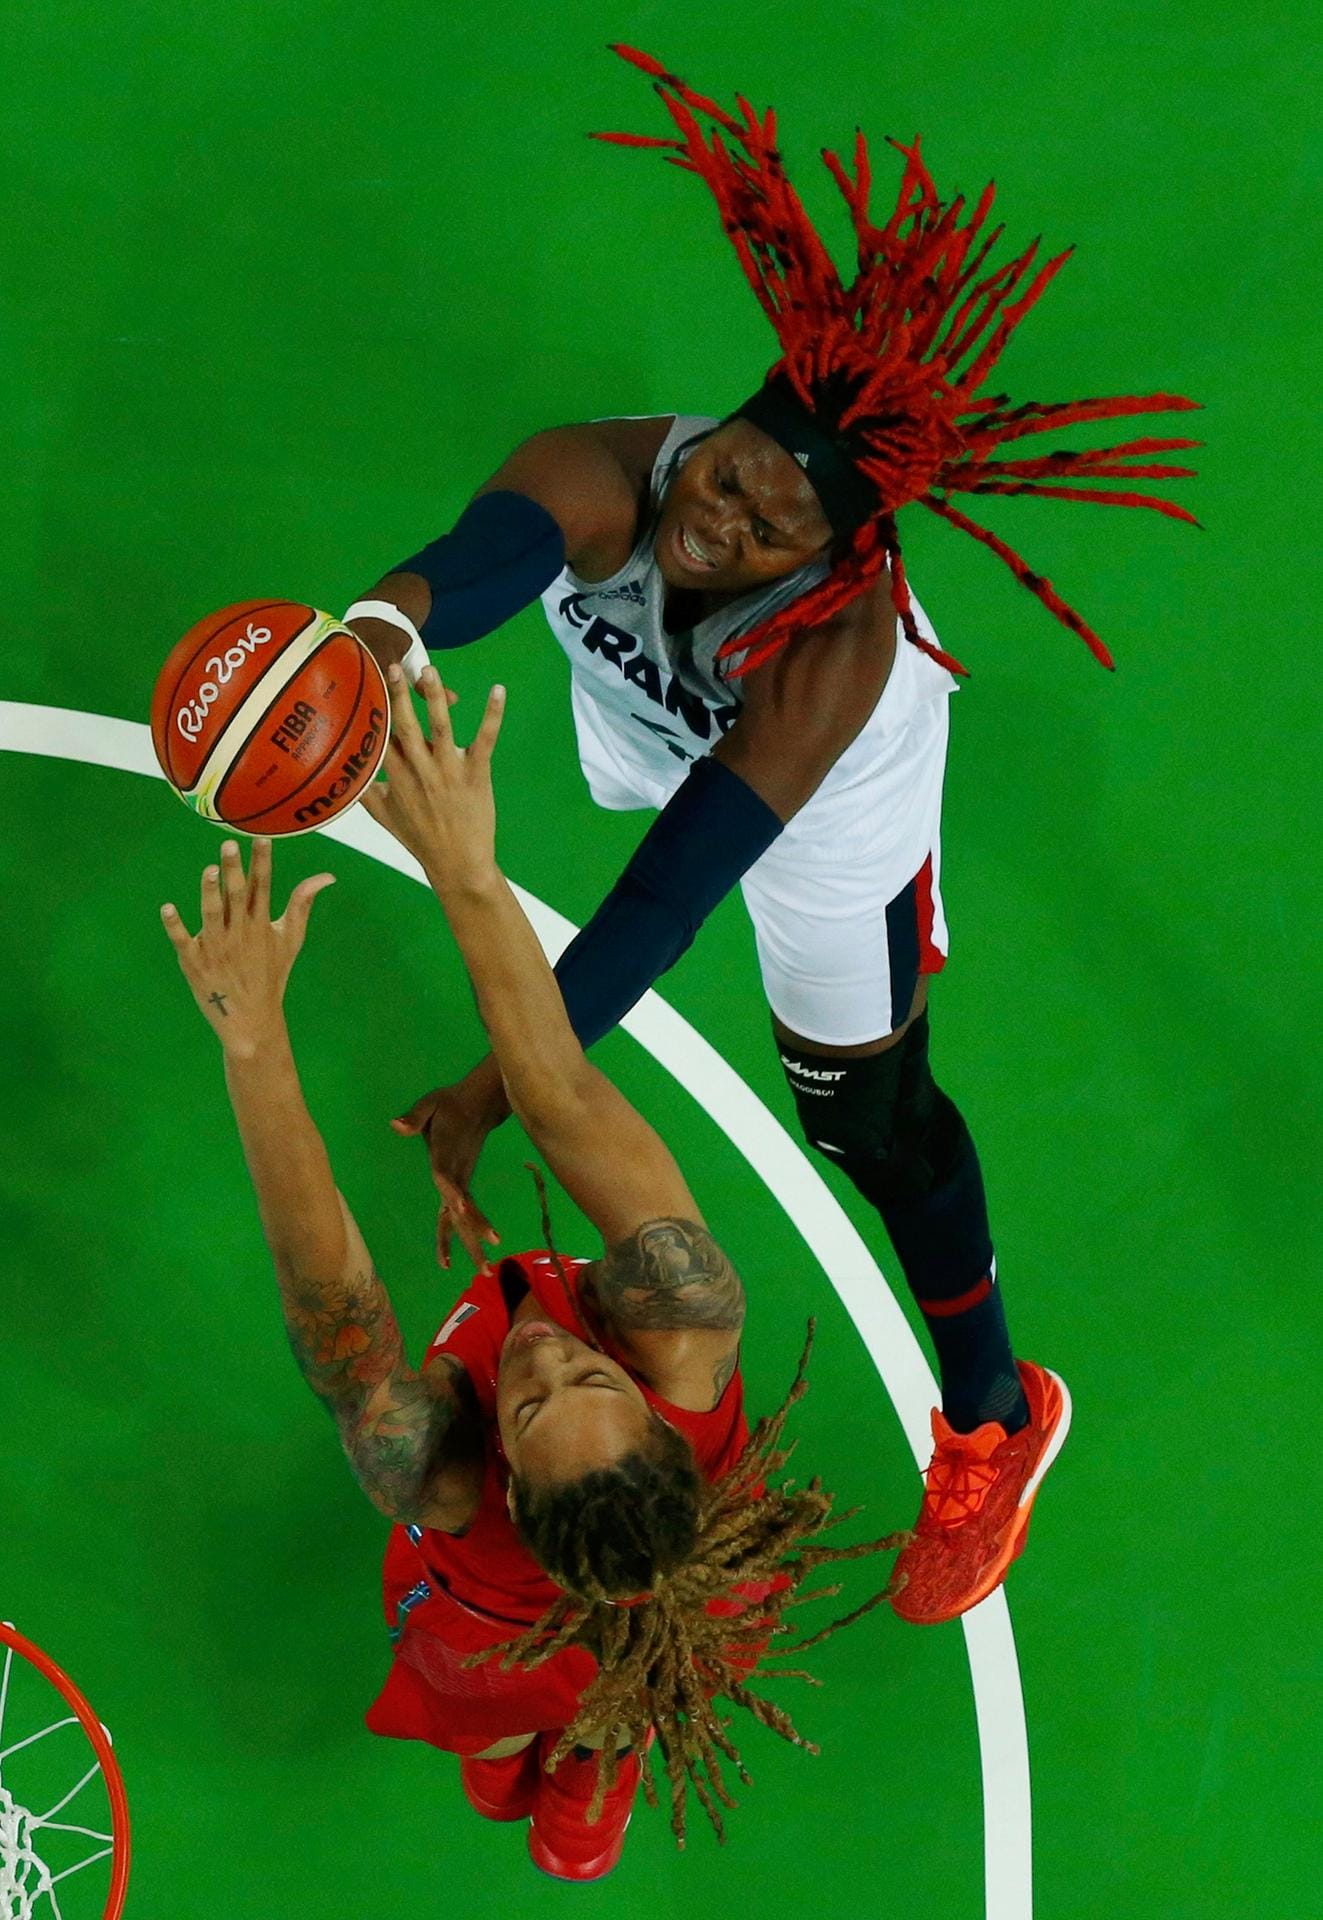 Mit wehenden Haaren kämpfen die beiden Basketballerinnen Isabelle Yacoubou aus Frankreich (re., weiße Spielkleidung) und die Amerikanerin Brittney Griner (li., rote Spielkleidung) im olympischen Halbfinale um den Ball.